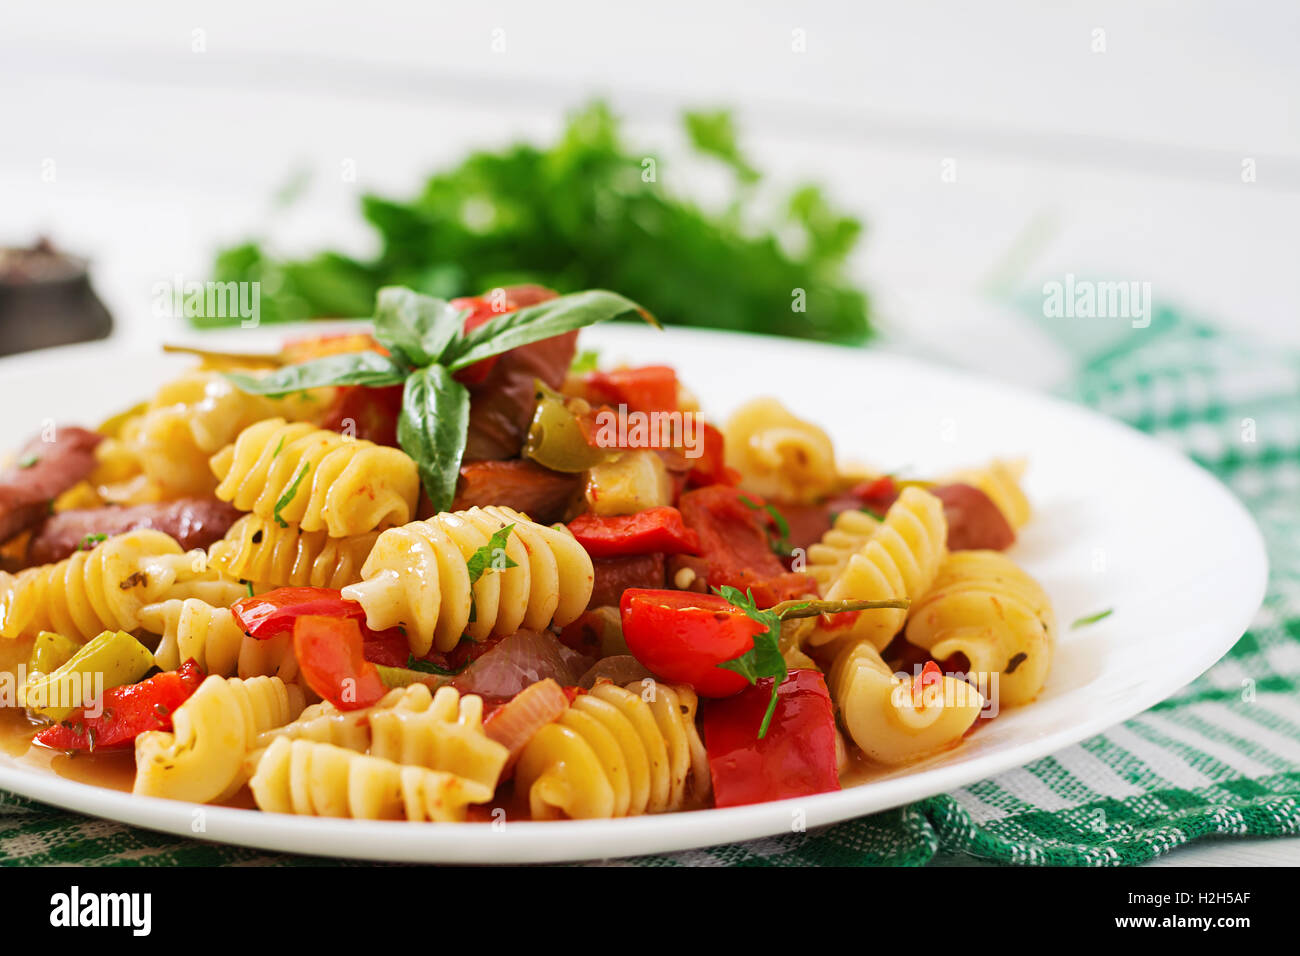 Les pâtes à la sauce tomate avec des saucisses, tomates, basilic vert décoré en plaque blanche sur un fond de bois. Banque D'Images